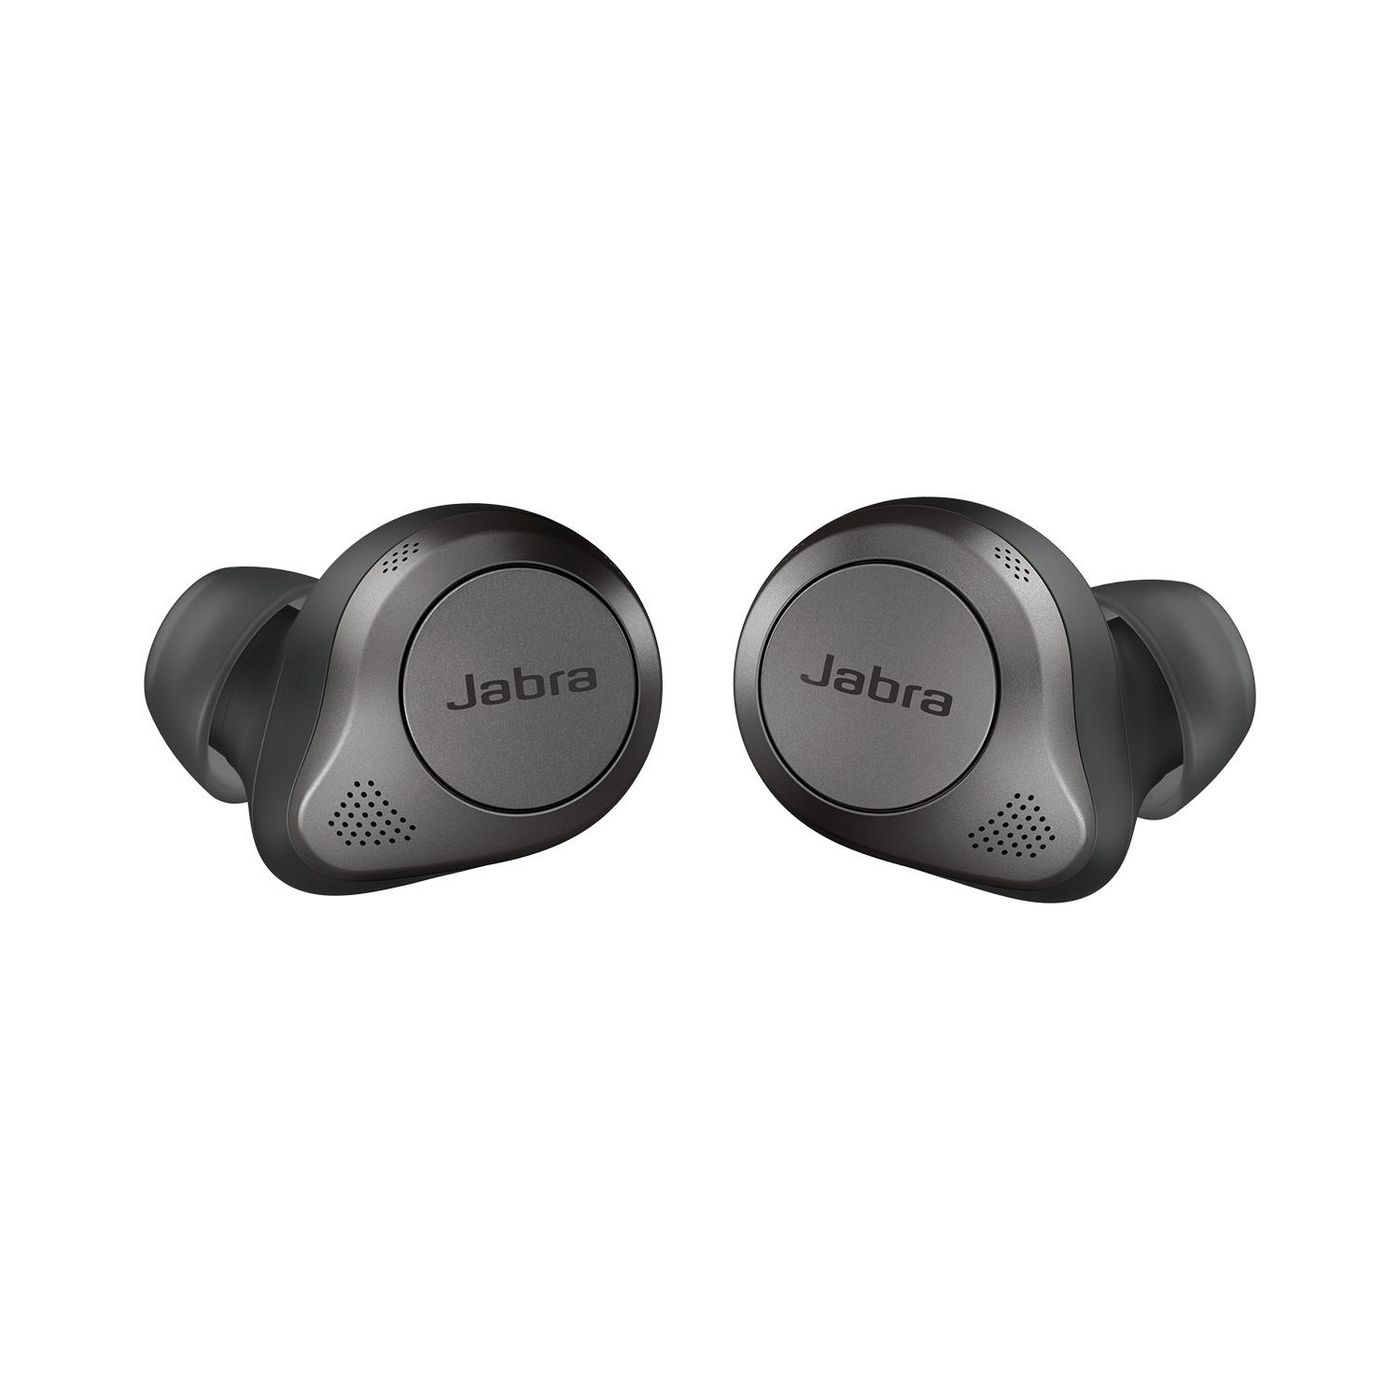 Jabra 100-99190000-60 W125847960 Elite 85t - Titanium Black 